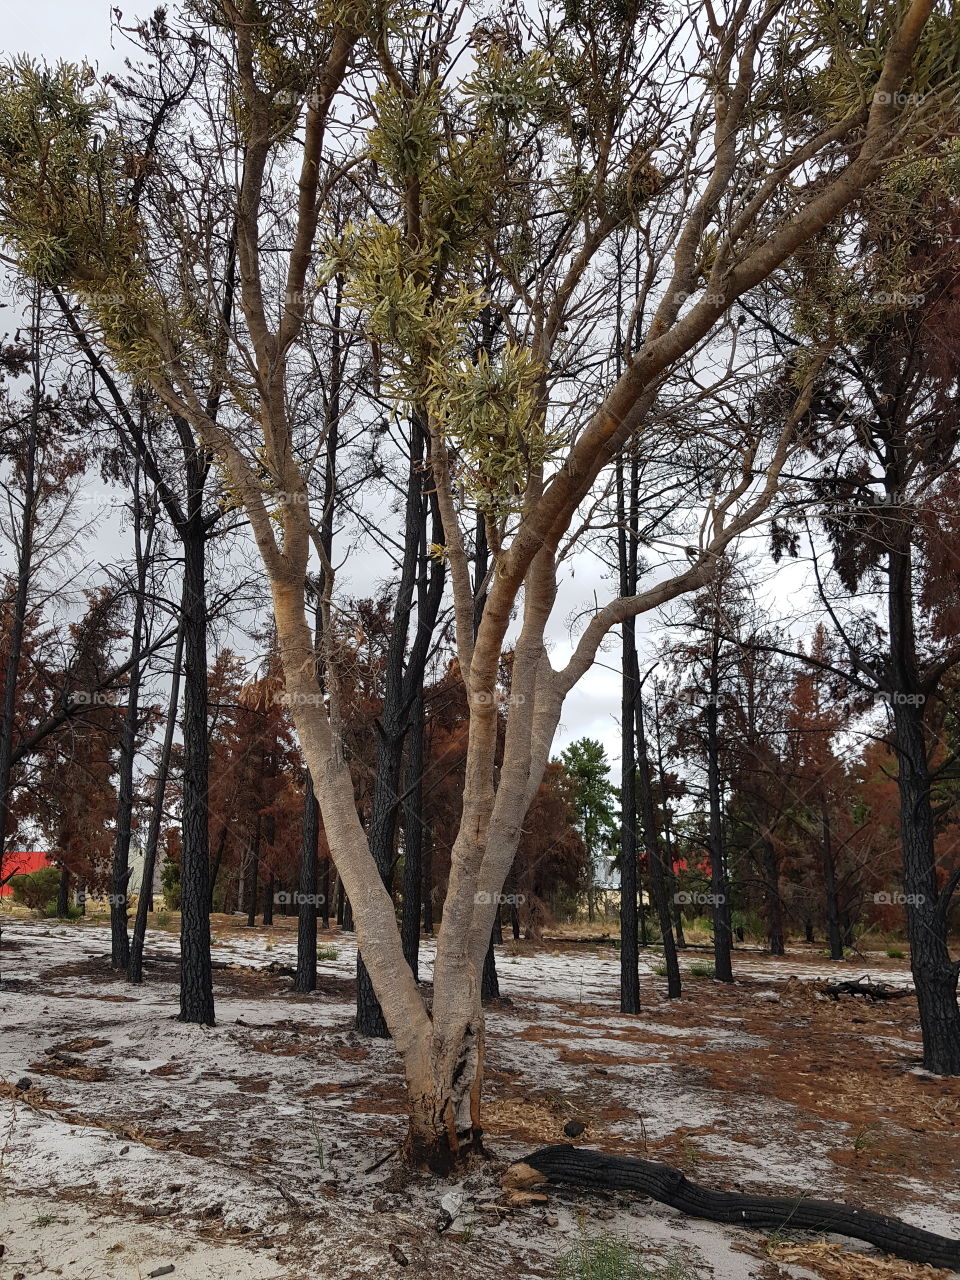 last unburnt tree